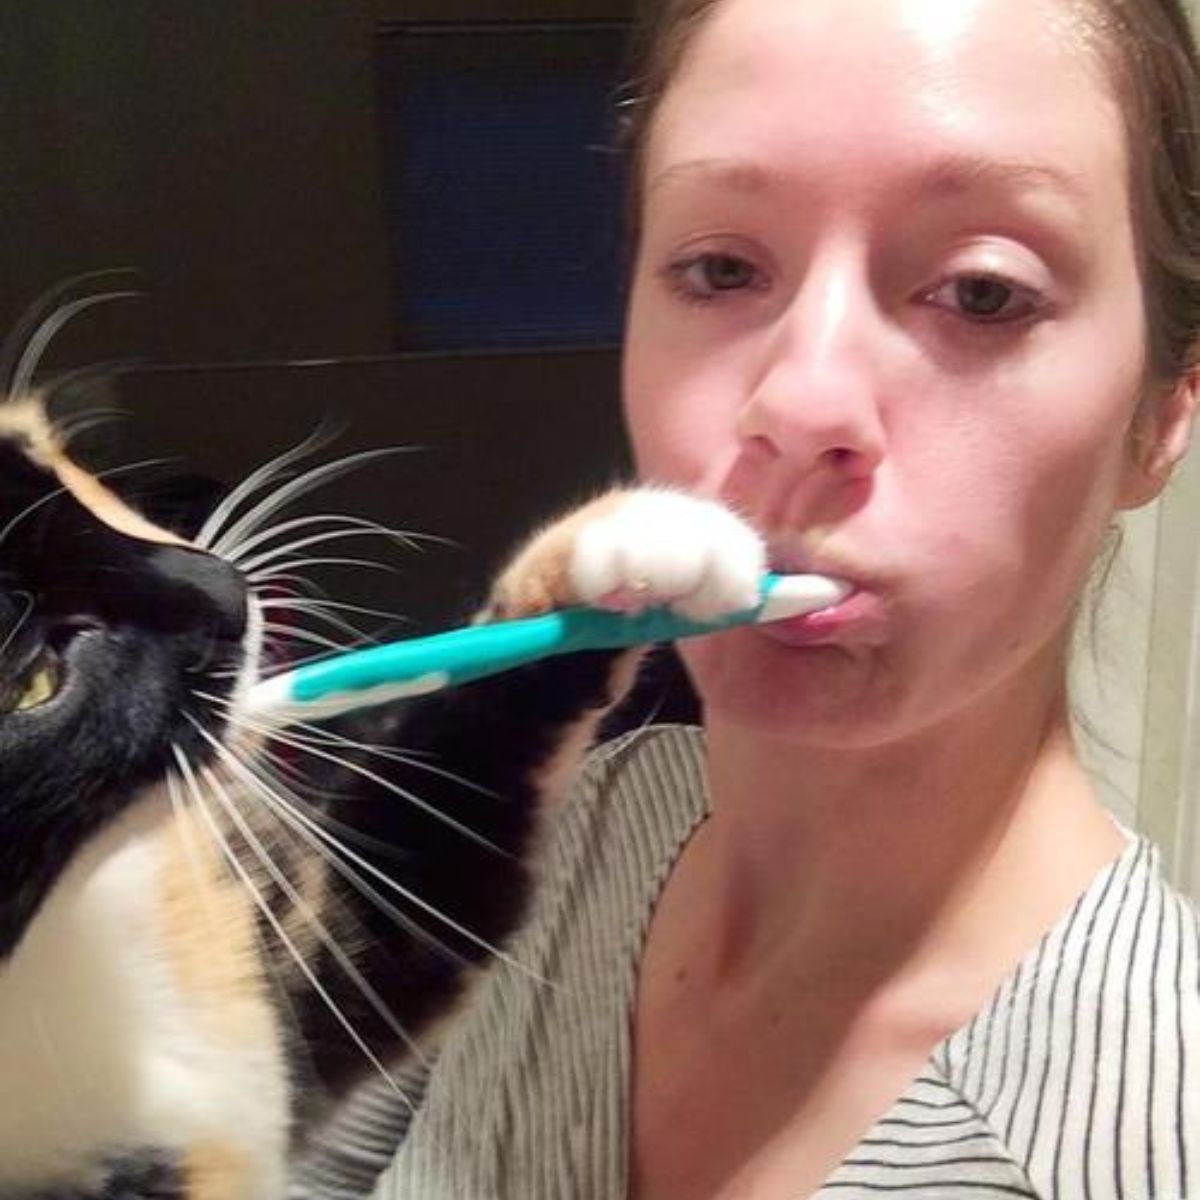 cat help owner brush her teeth 